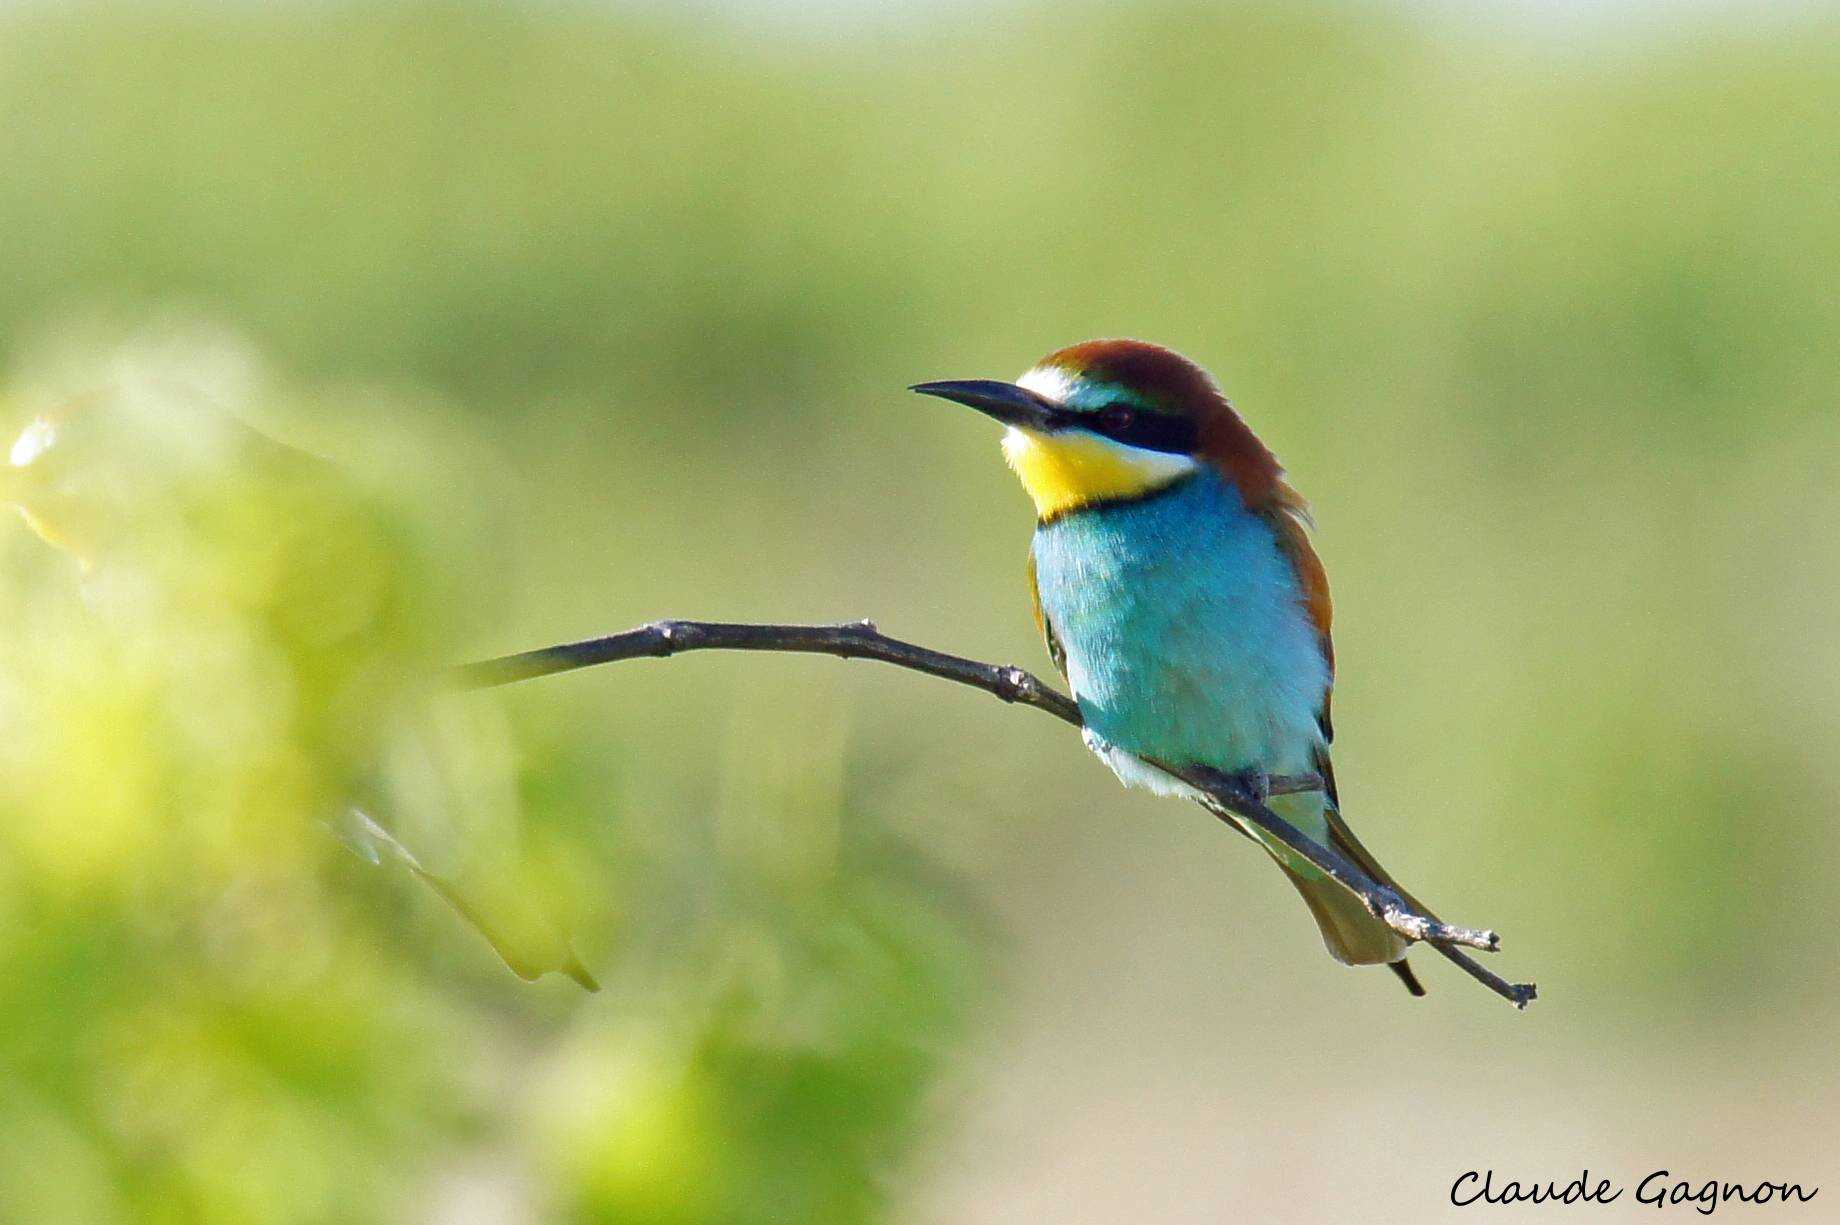 Hamelin: Avistamiento de aves en el Espacio Protegido de Doñana - Actividad  (El Rocío)